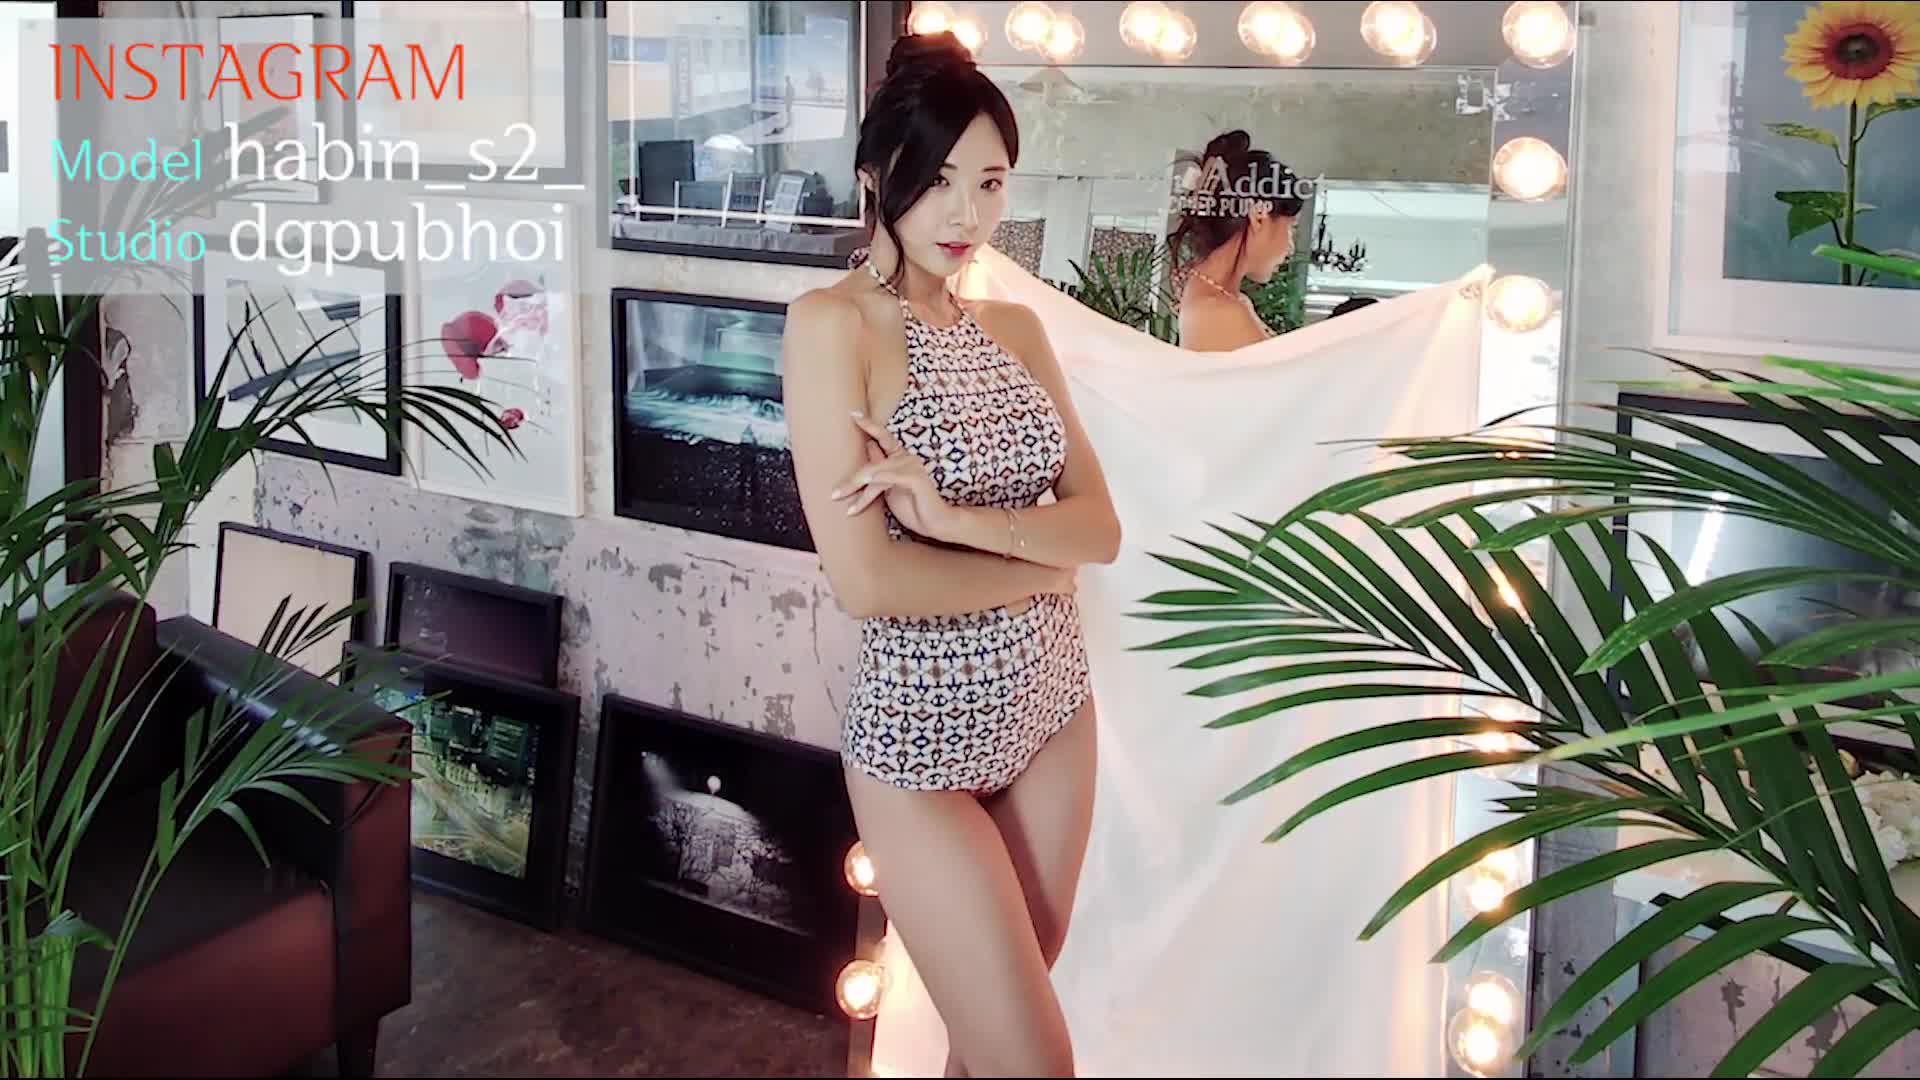 하빈 K-pop girl group Photo Shoot Live Compilation 15 Korean Model HaBin 모델 촬영회 스케치 영상